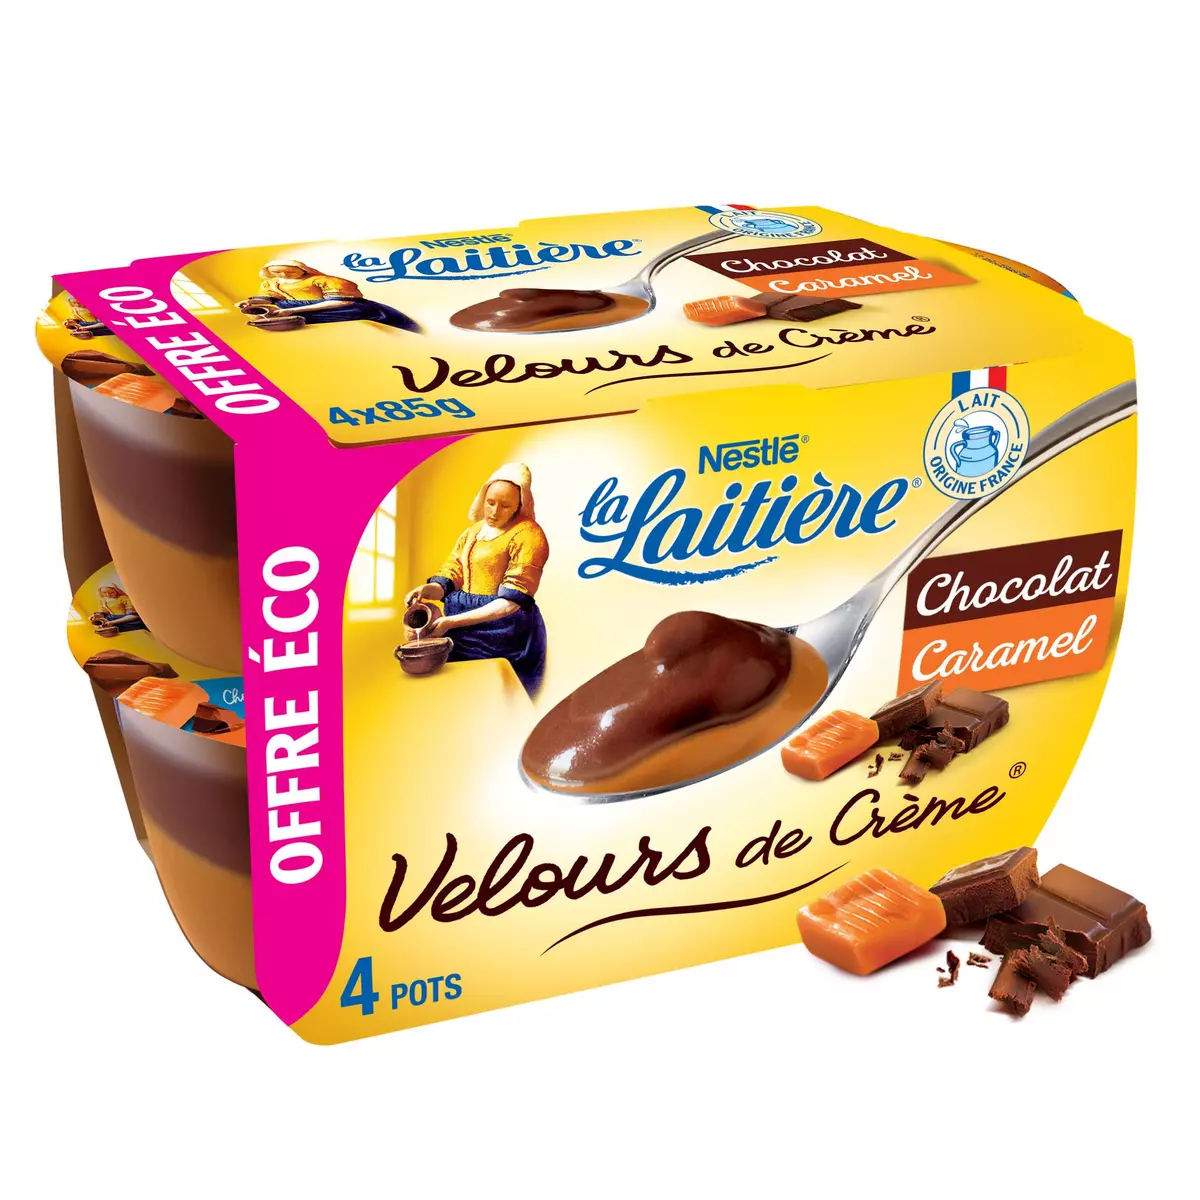 LA LAITIERE Velours de crème au chocolat caramel 4x85g